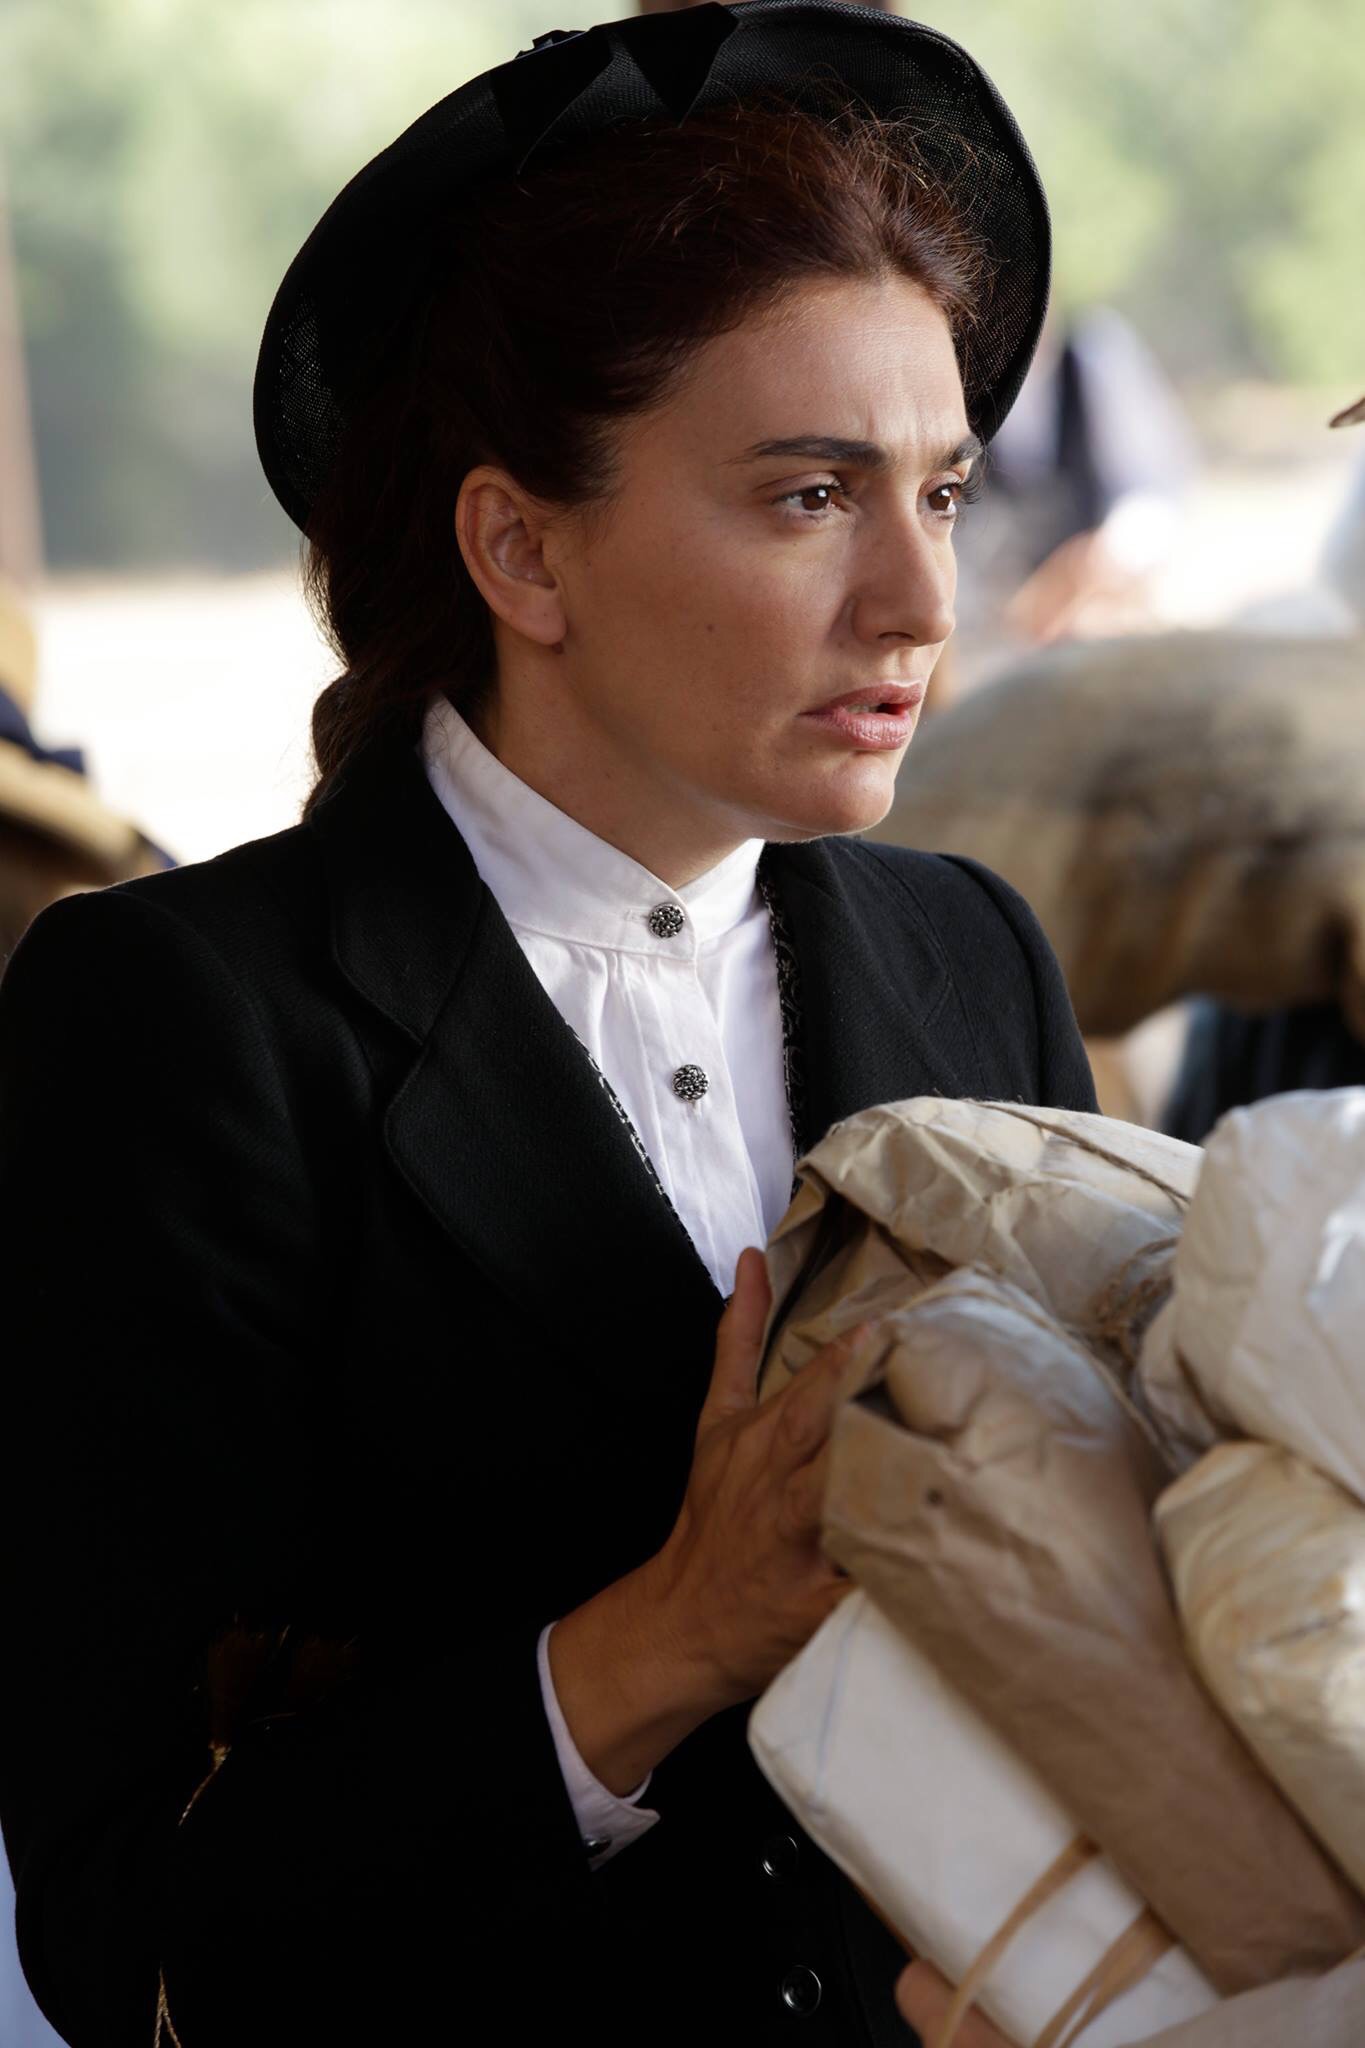 Kassandra Voyagis as Sofia. Still from Boonville Redemption (2015)